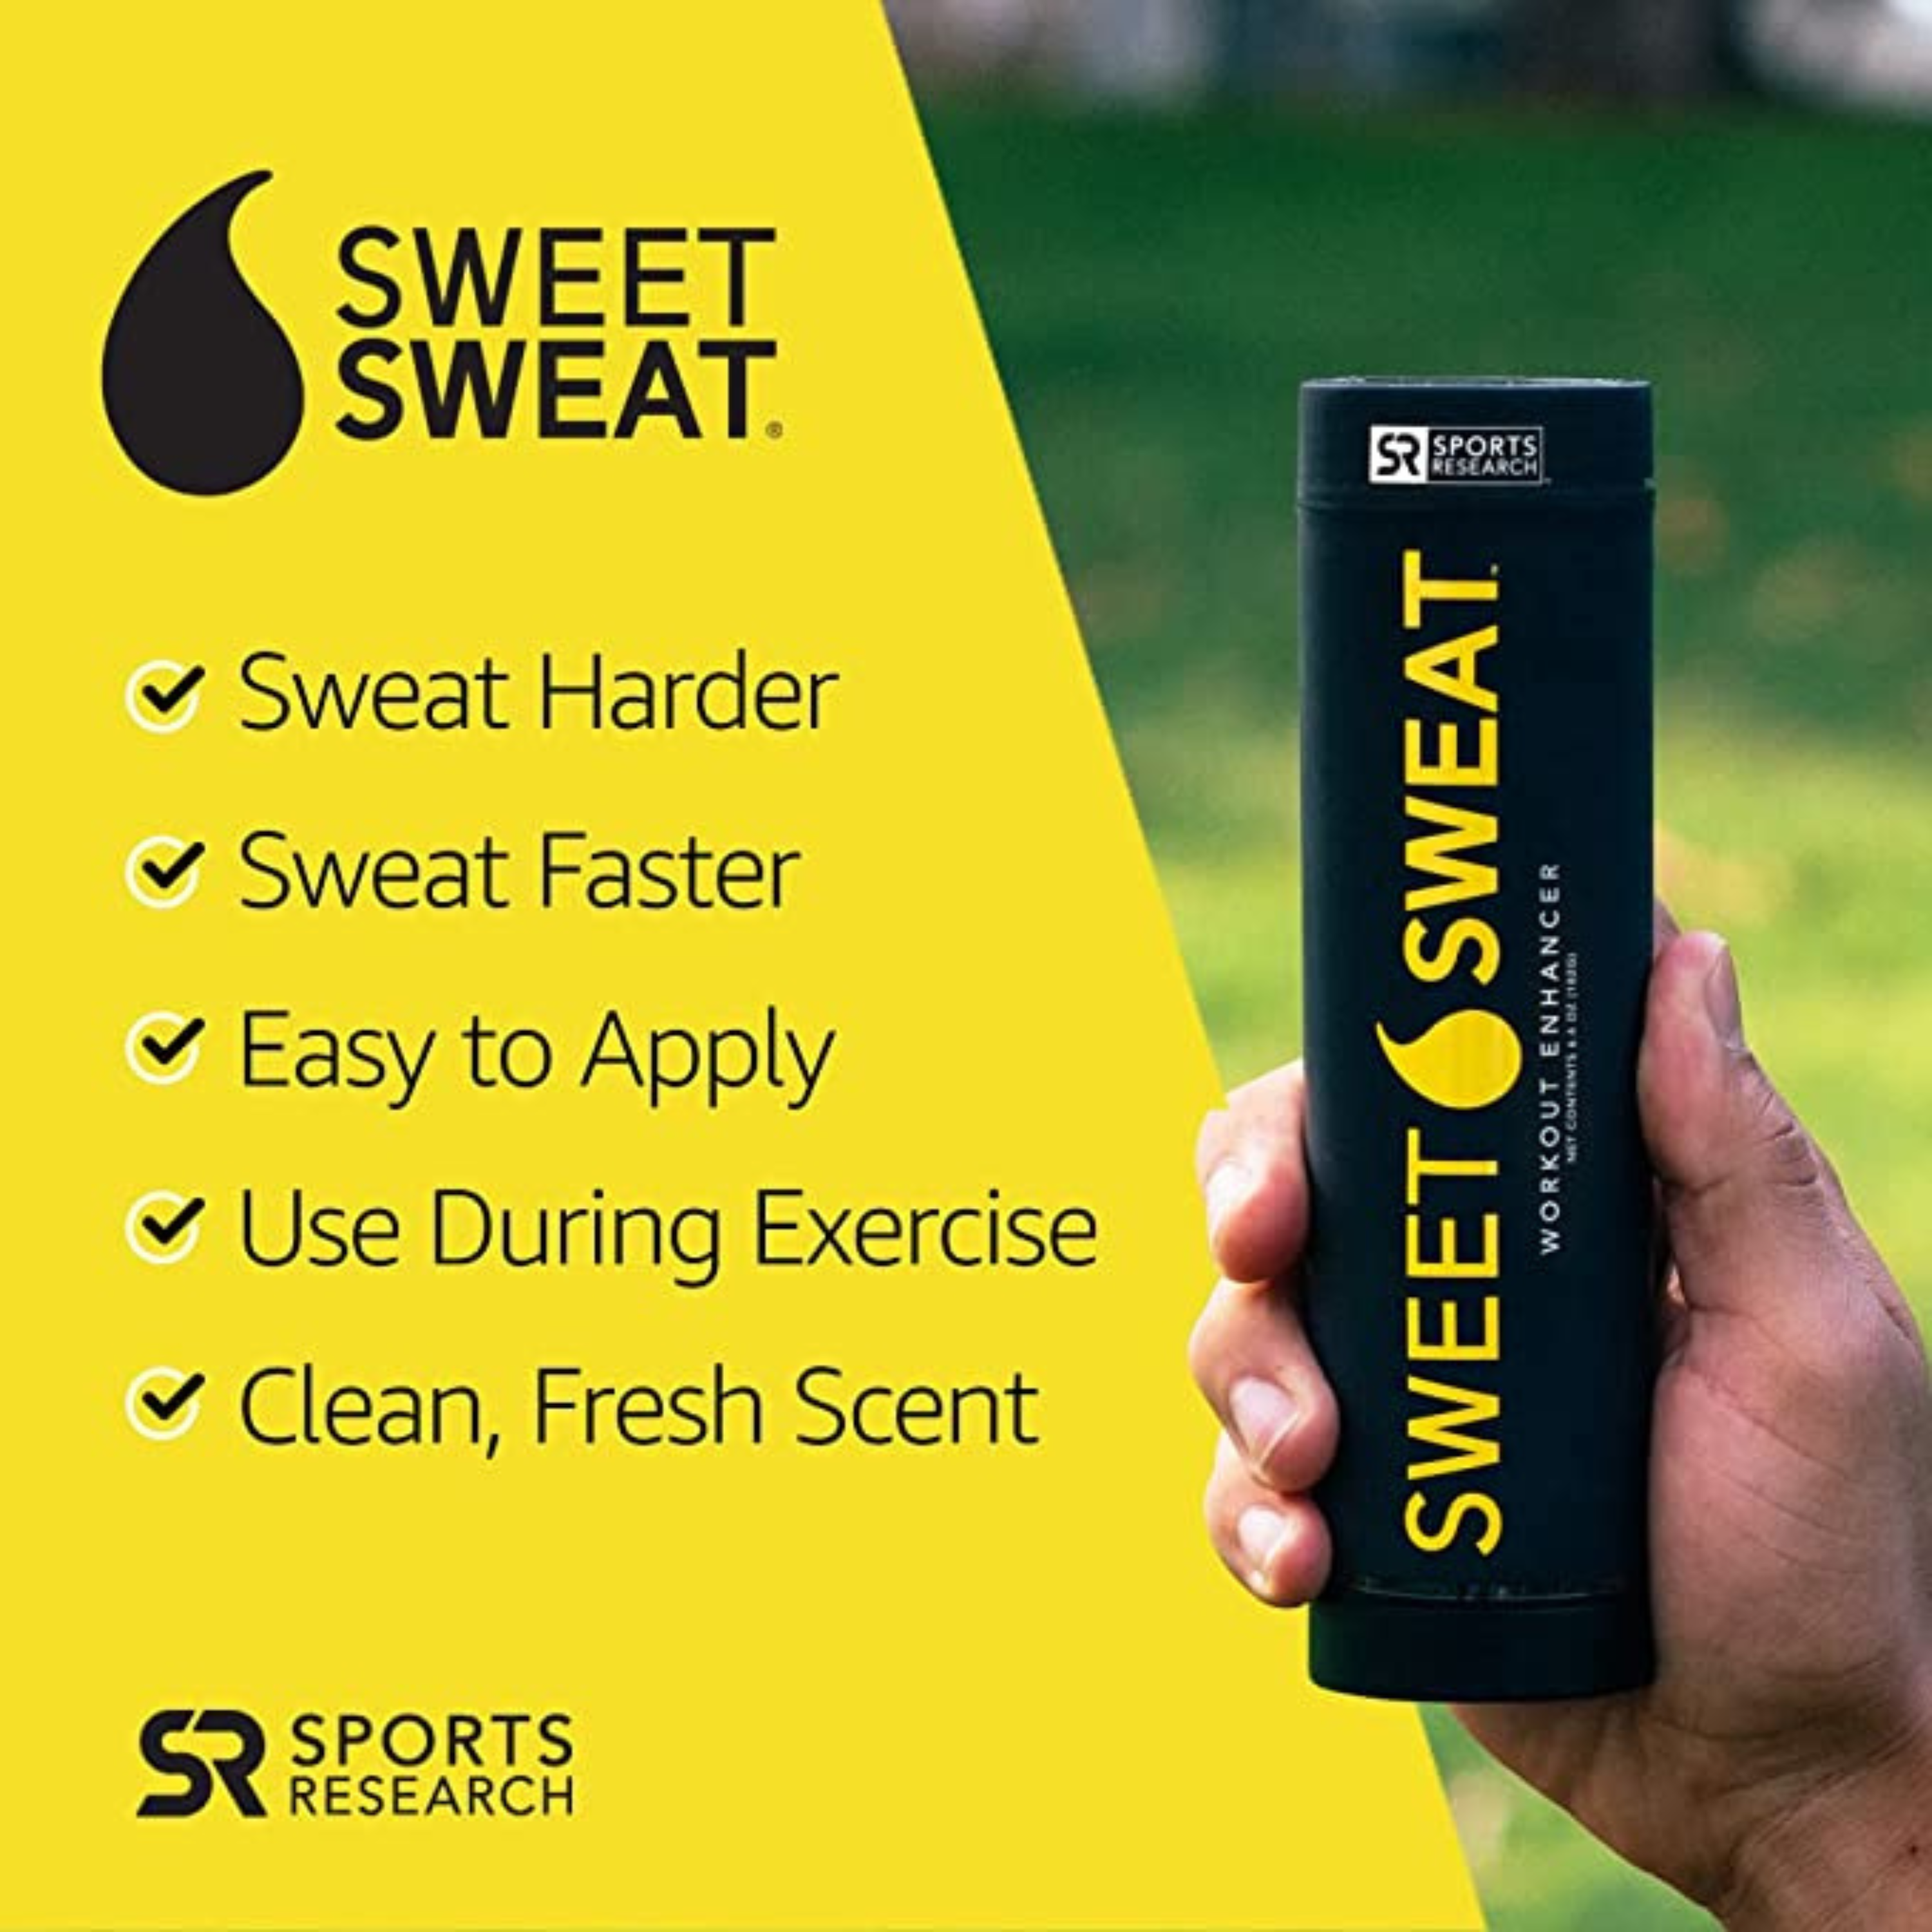 Sweet Sweat Workout Enhancement